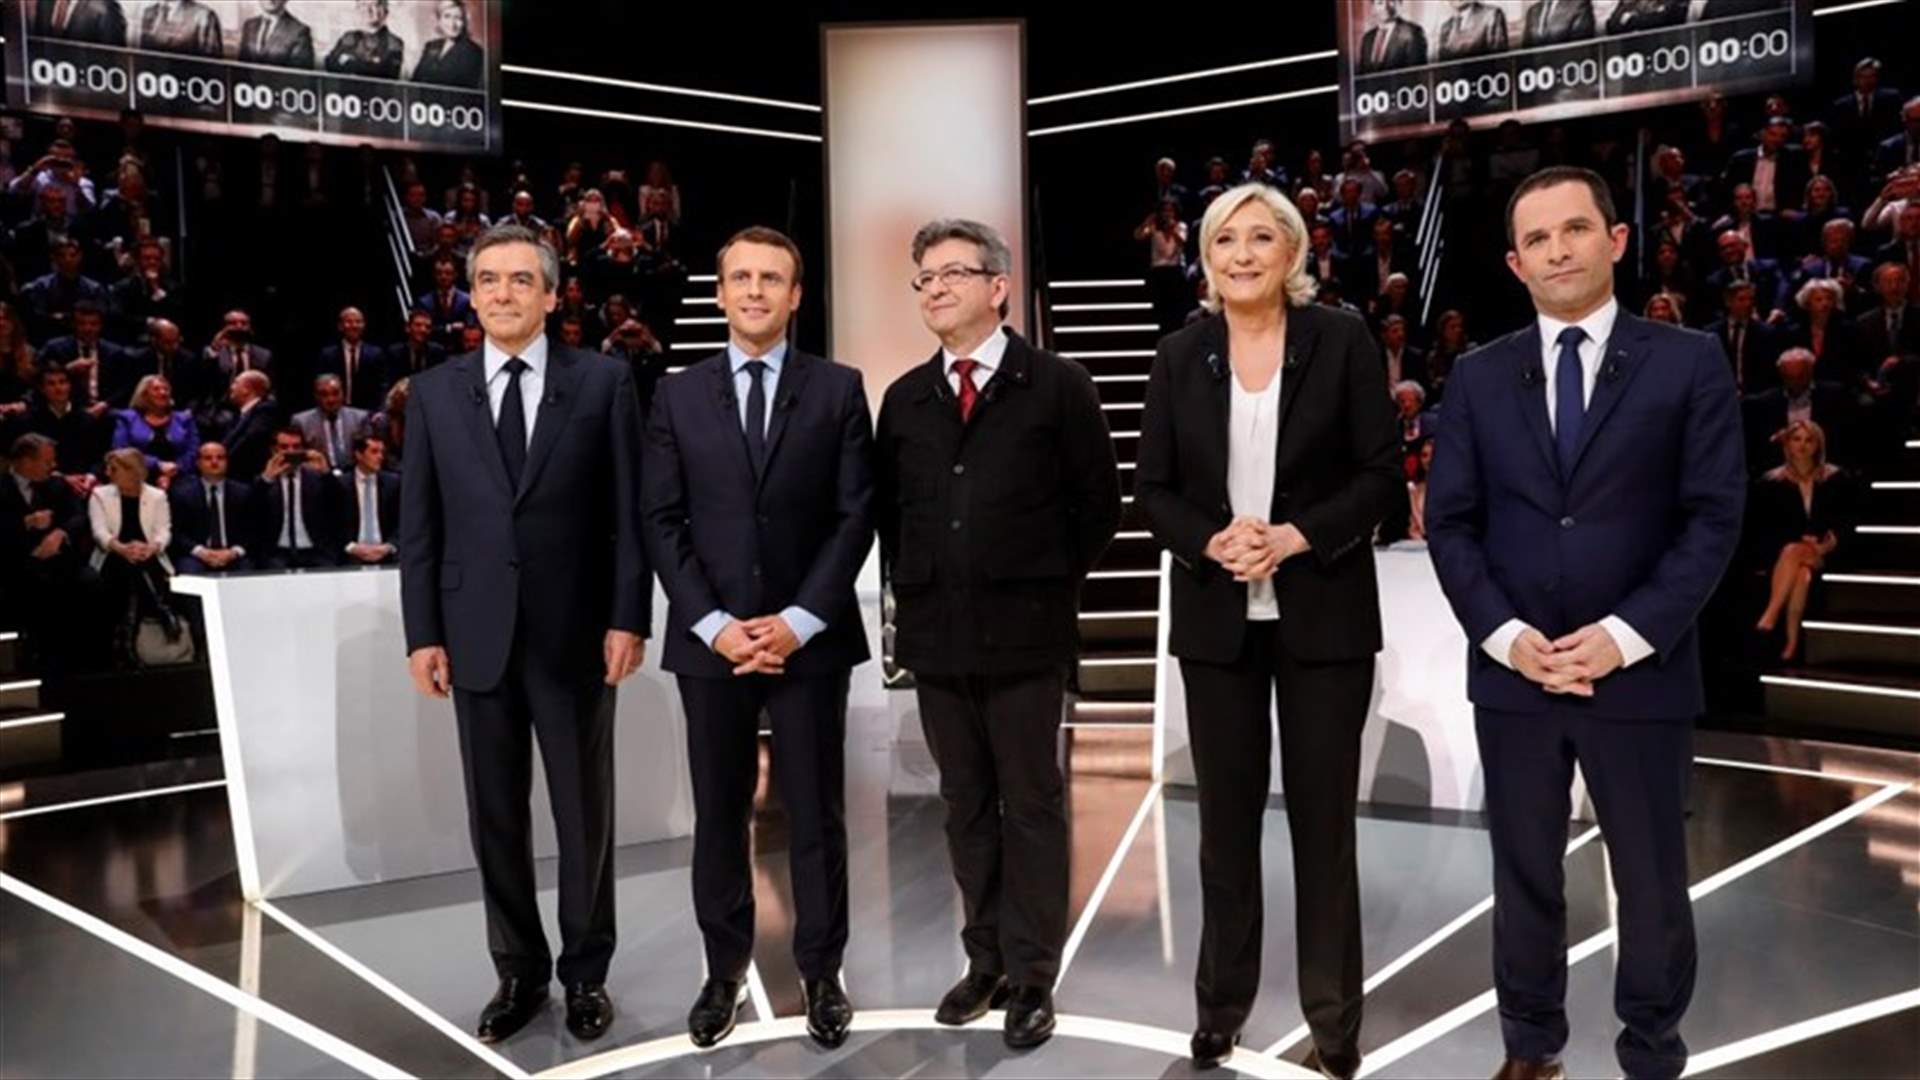 جديد استطلاعات الرأي...من سيفوز بانتخابات الرئاسة الفرنسية؟